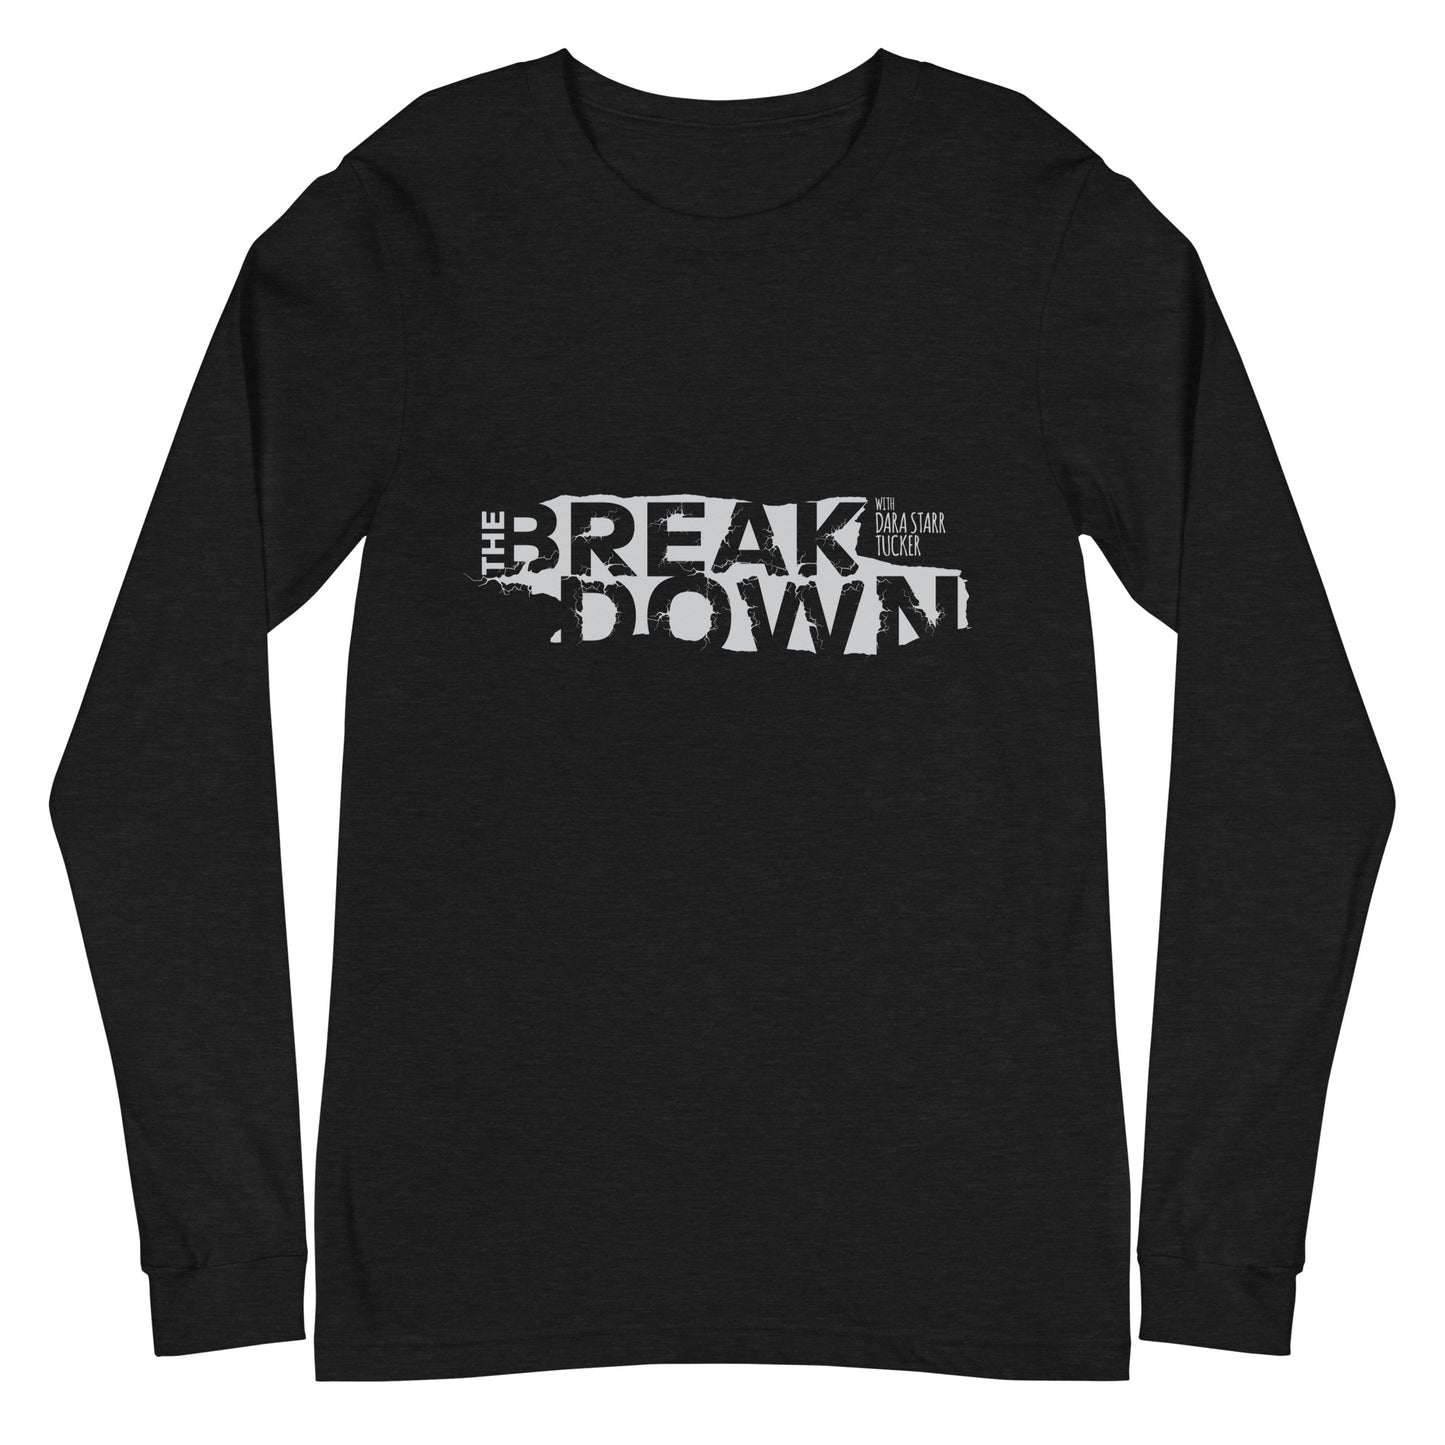 'The Breakdown' Men's Shirt - Black Unisex Long Sleeve Tee